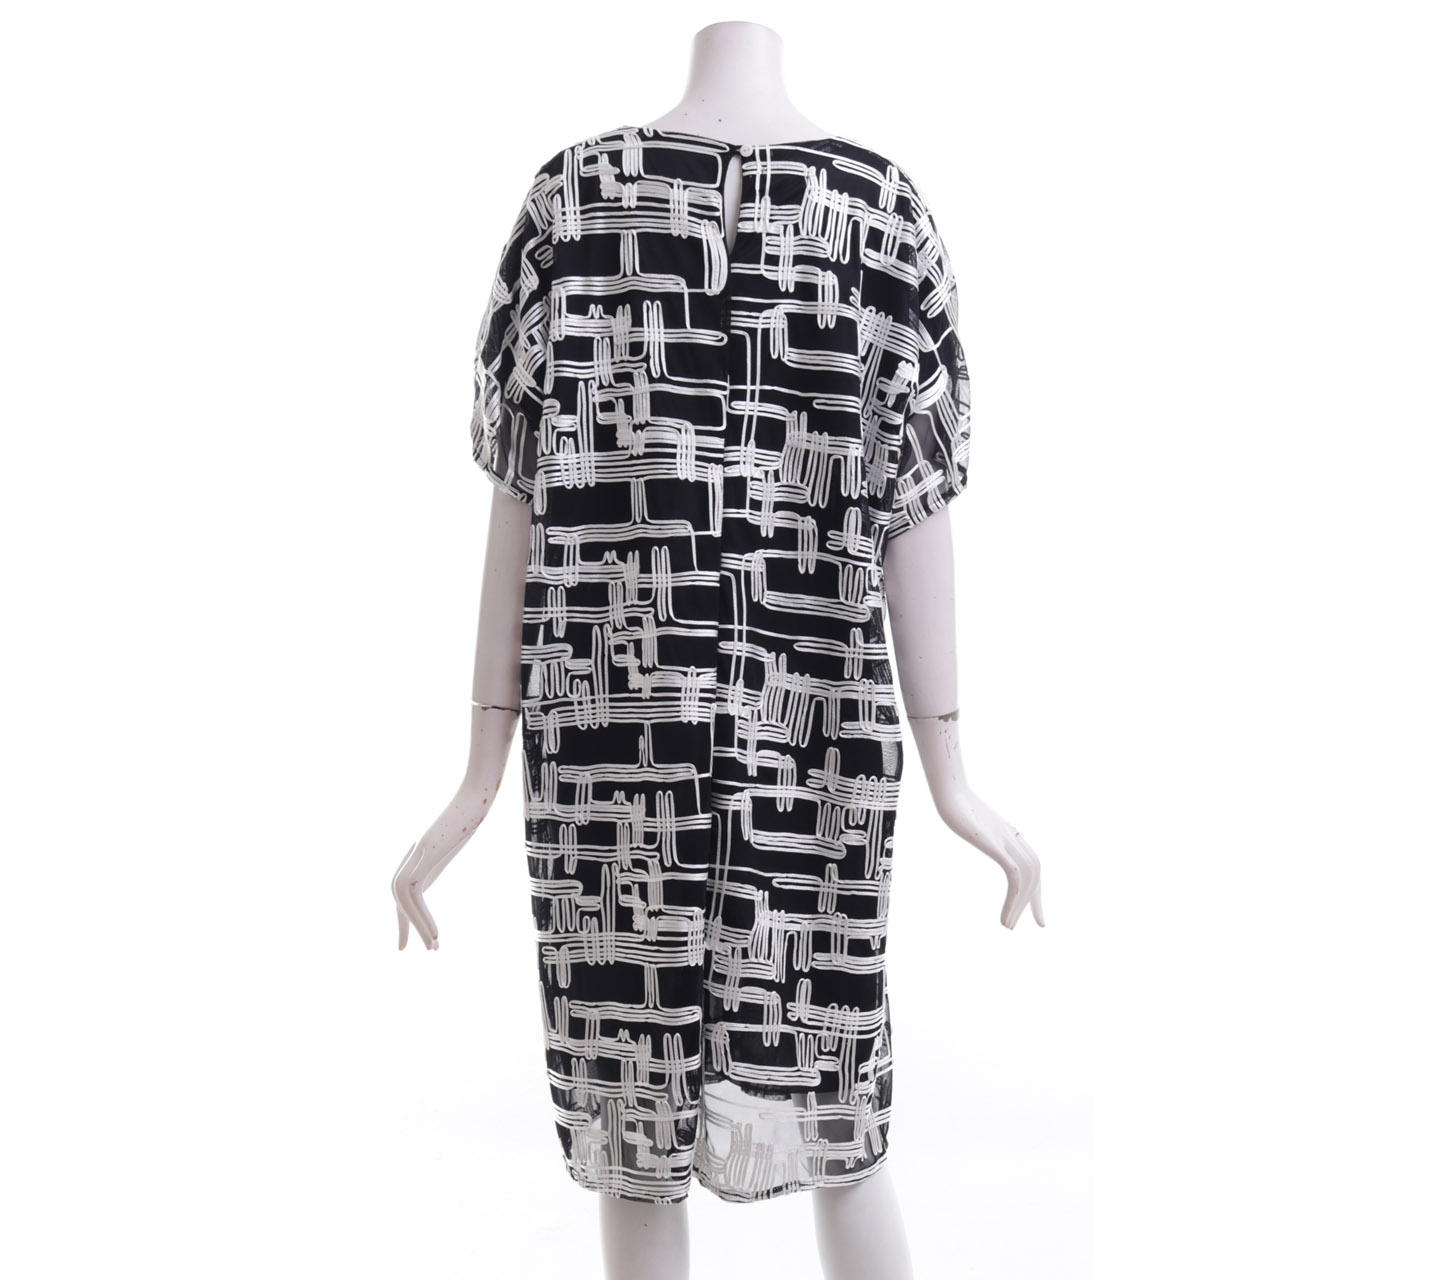 Kyva Black & White Patterned Mini Dress